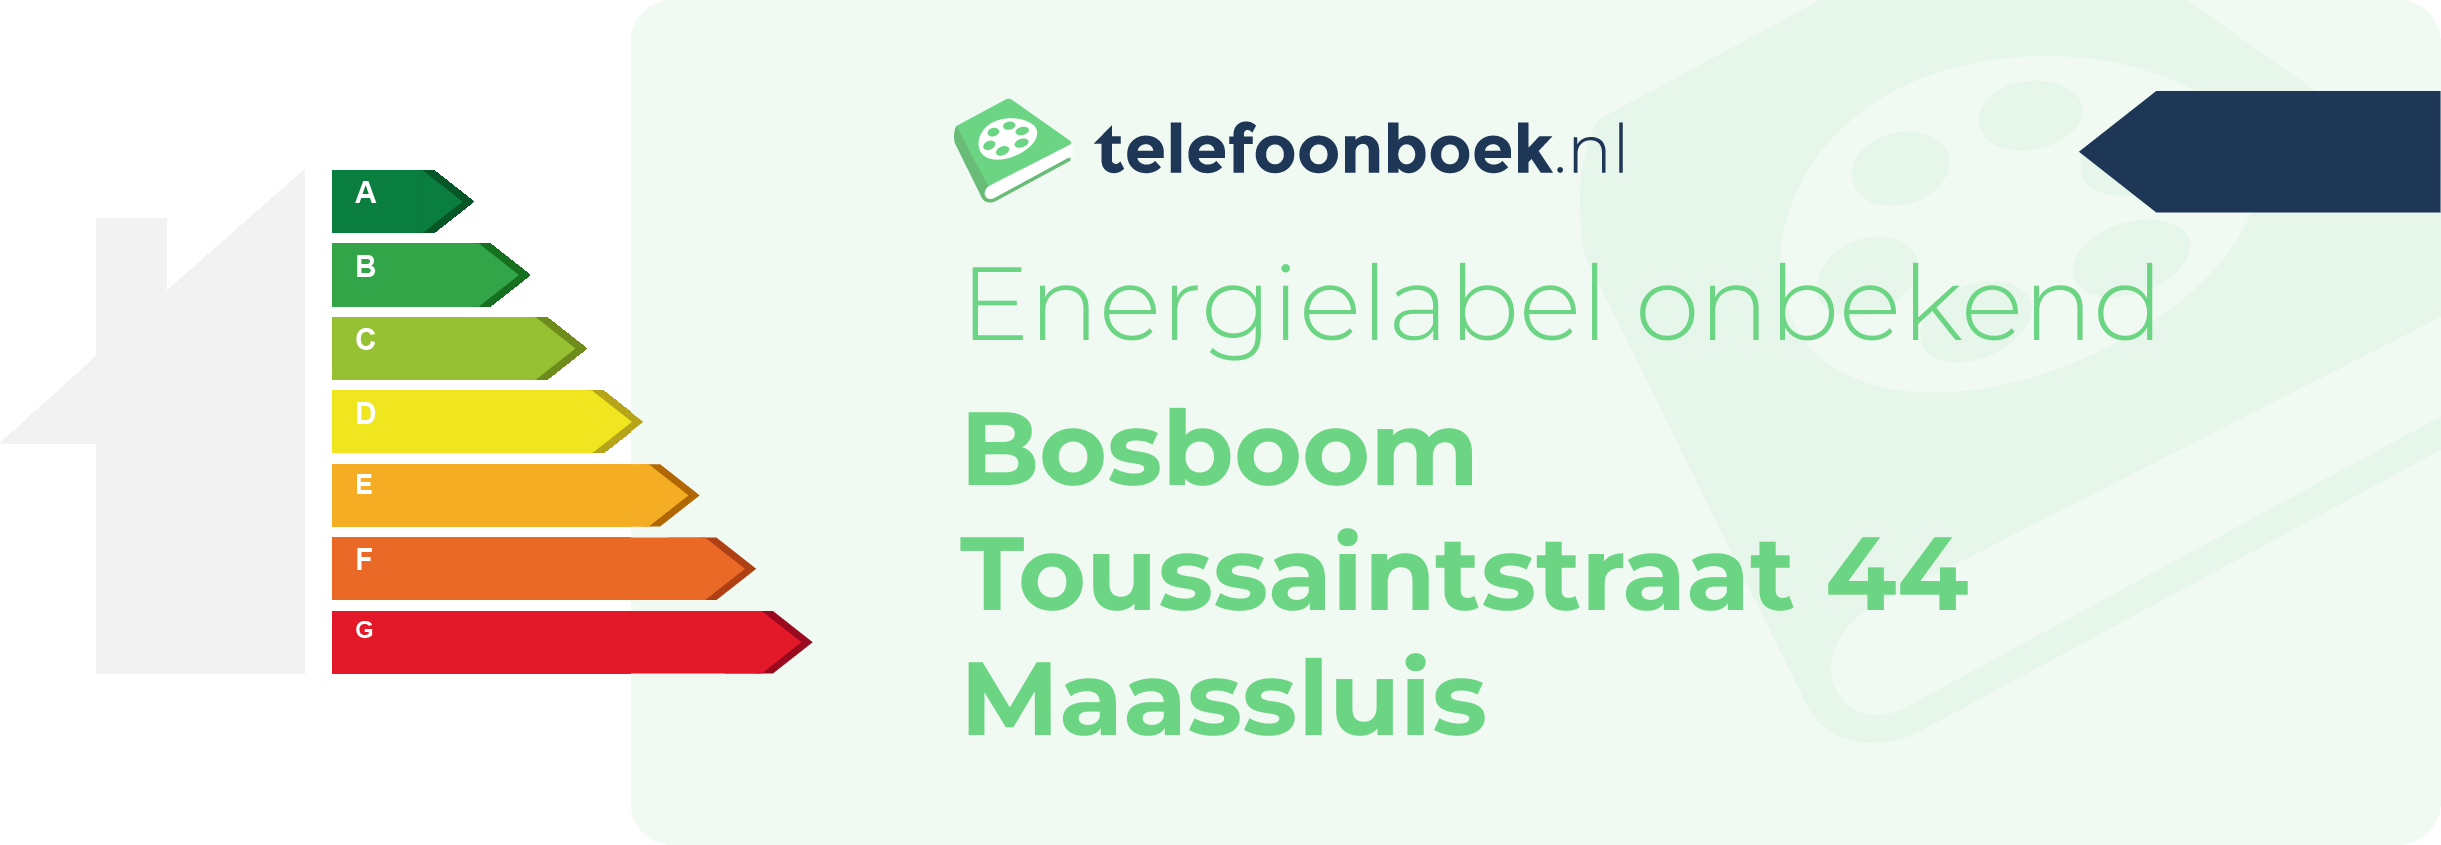 Energielabel Bosboom Toussaintstraat 44 Maassluis